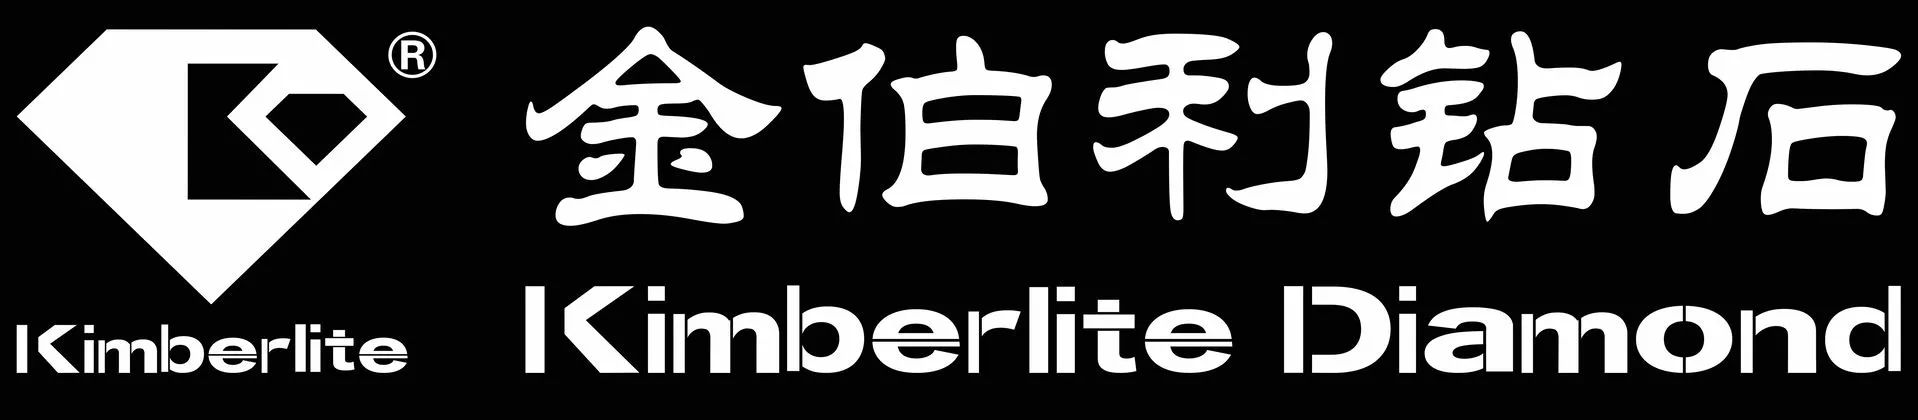 金伯利品牌logo图片